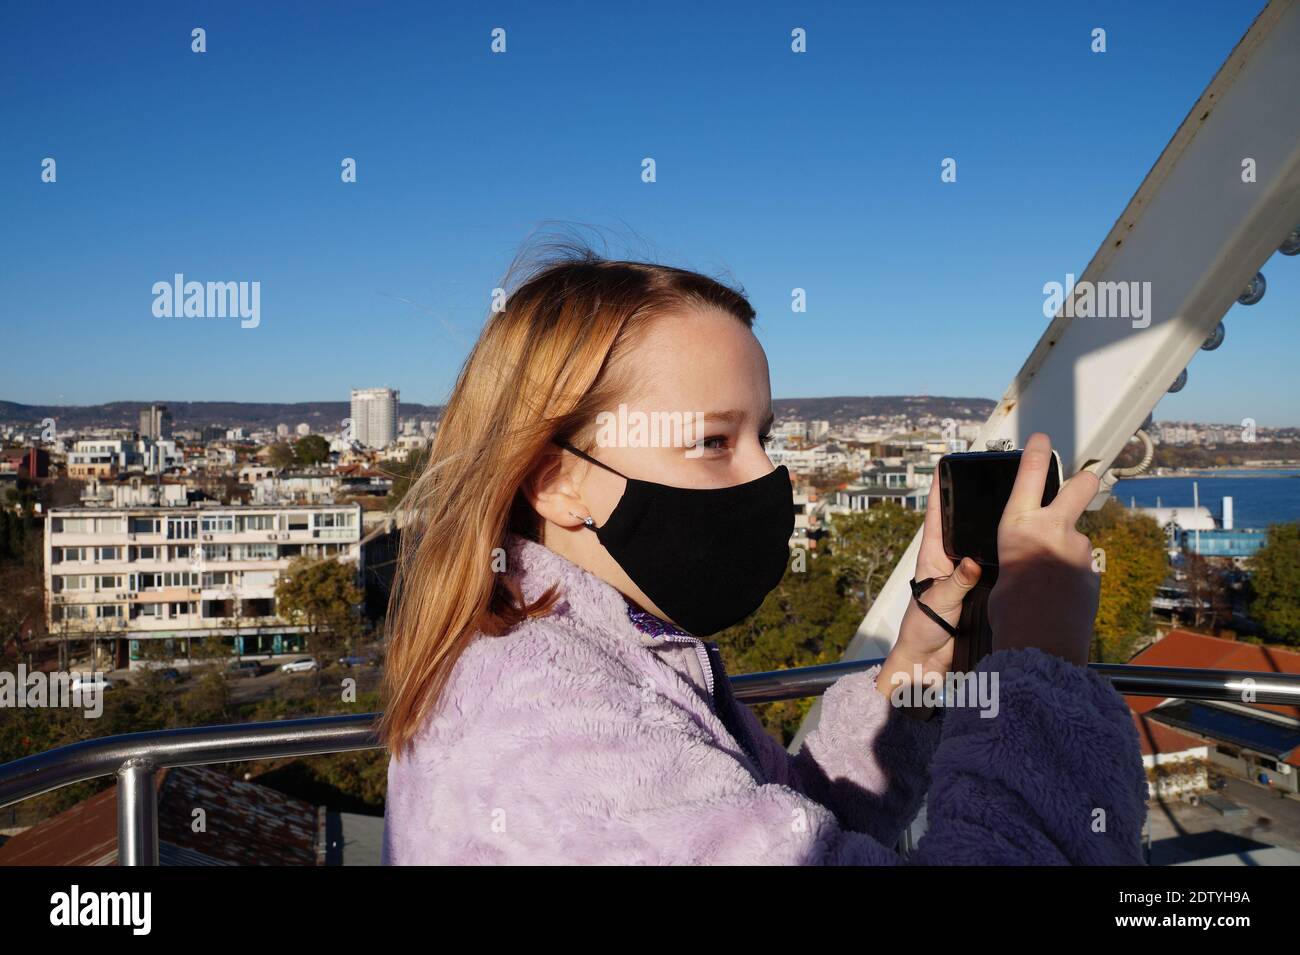 teenage girl in black medical mask takes selfie on ferris wheel. Stock Photo